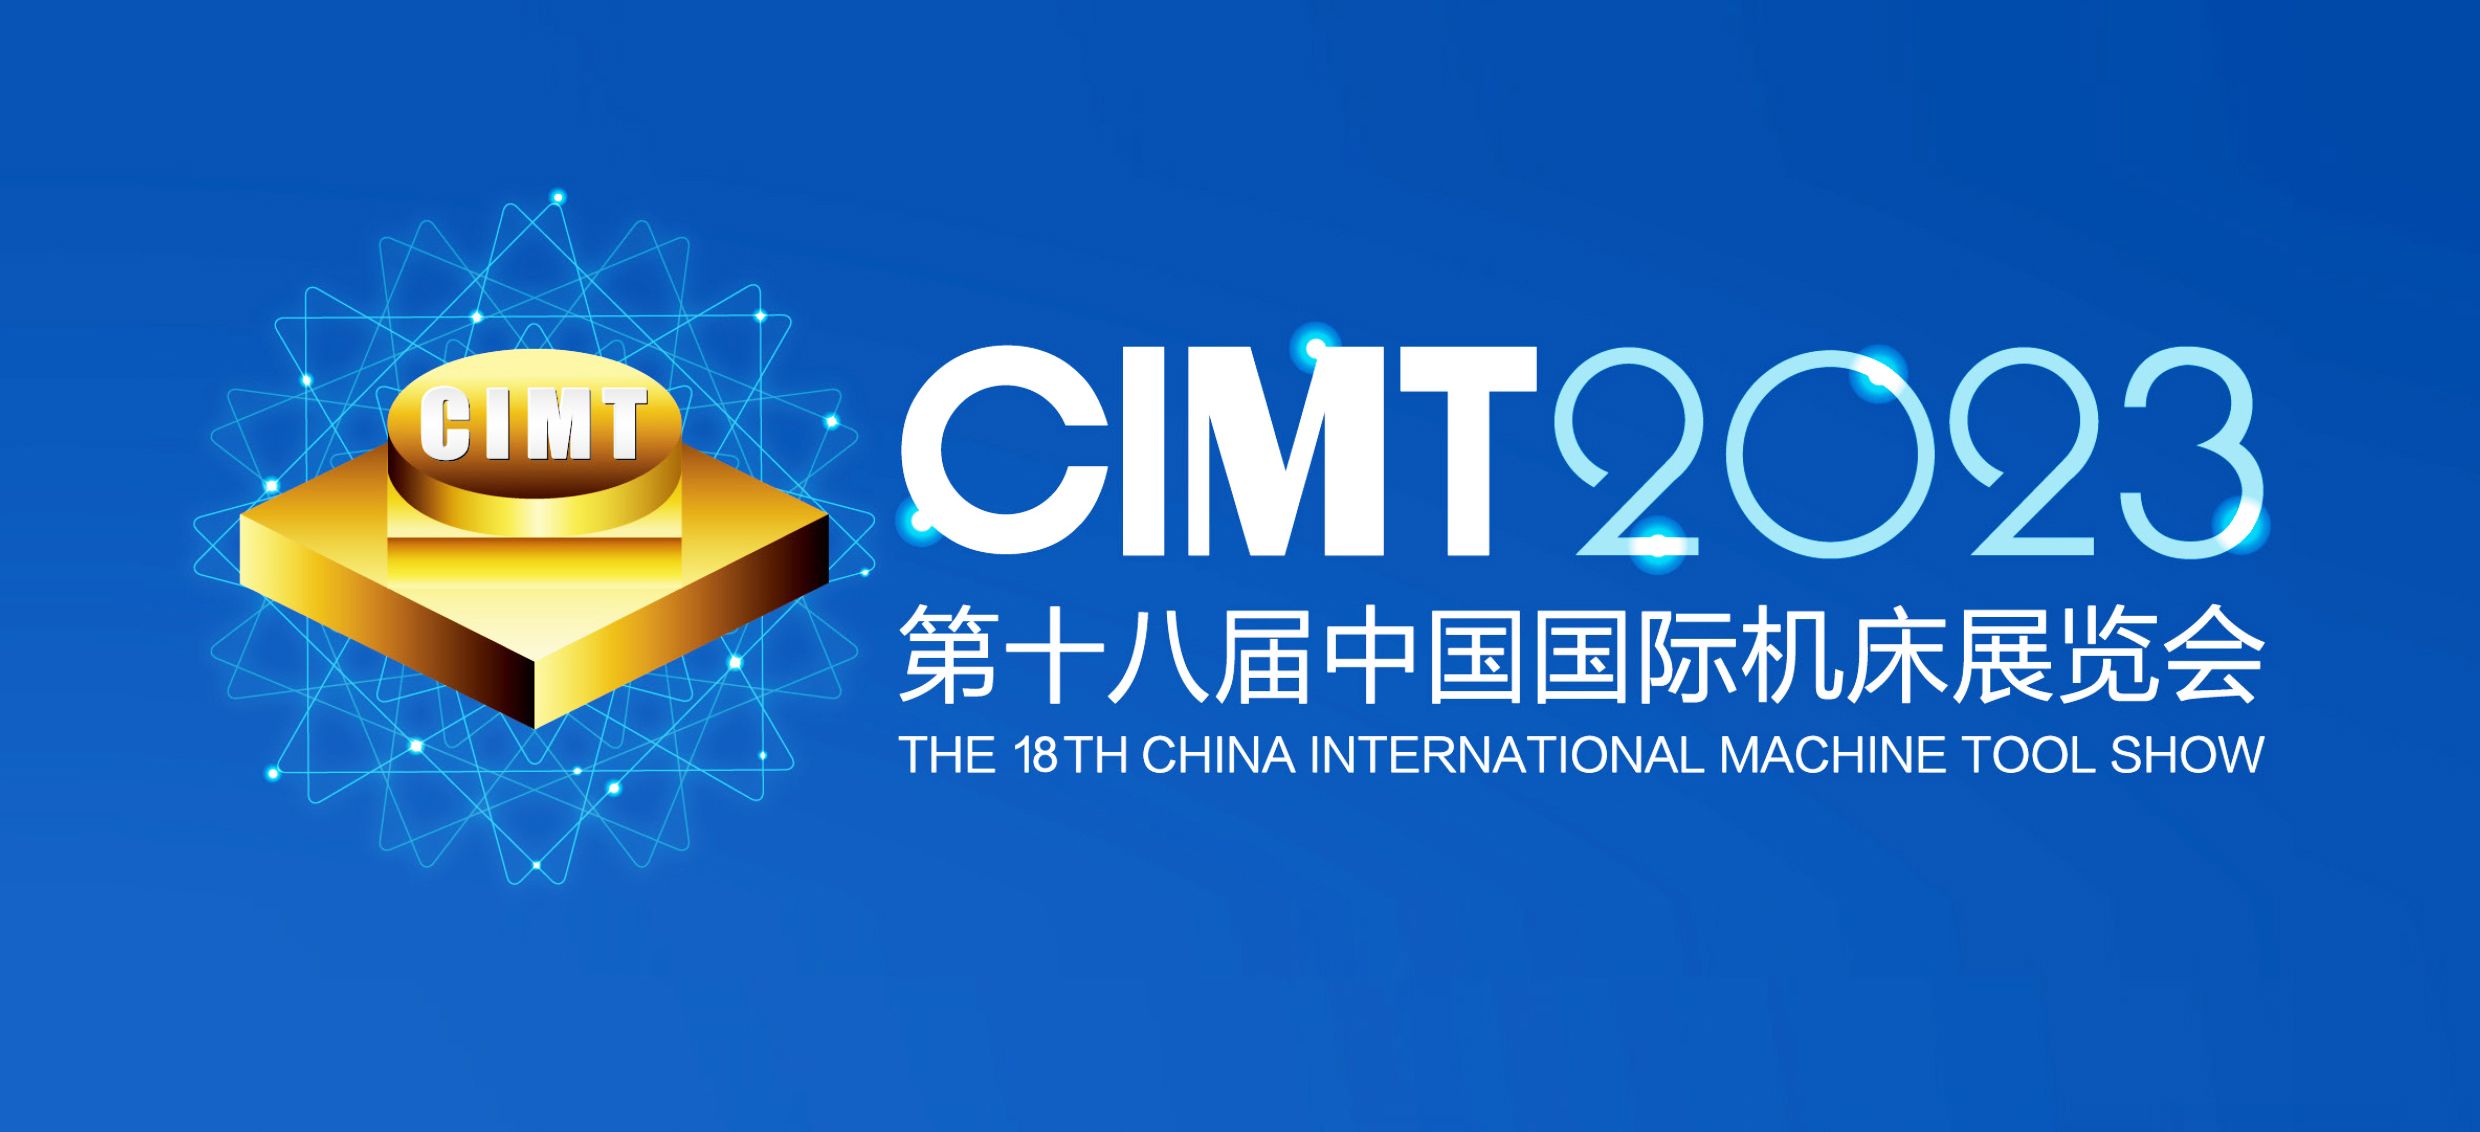 展會邀請|4月10-15第十八屆中國國際機床展覽會通錦精密與您相約北京！